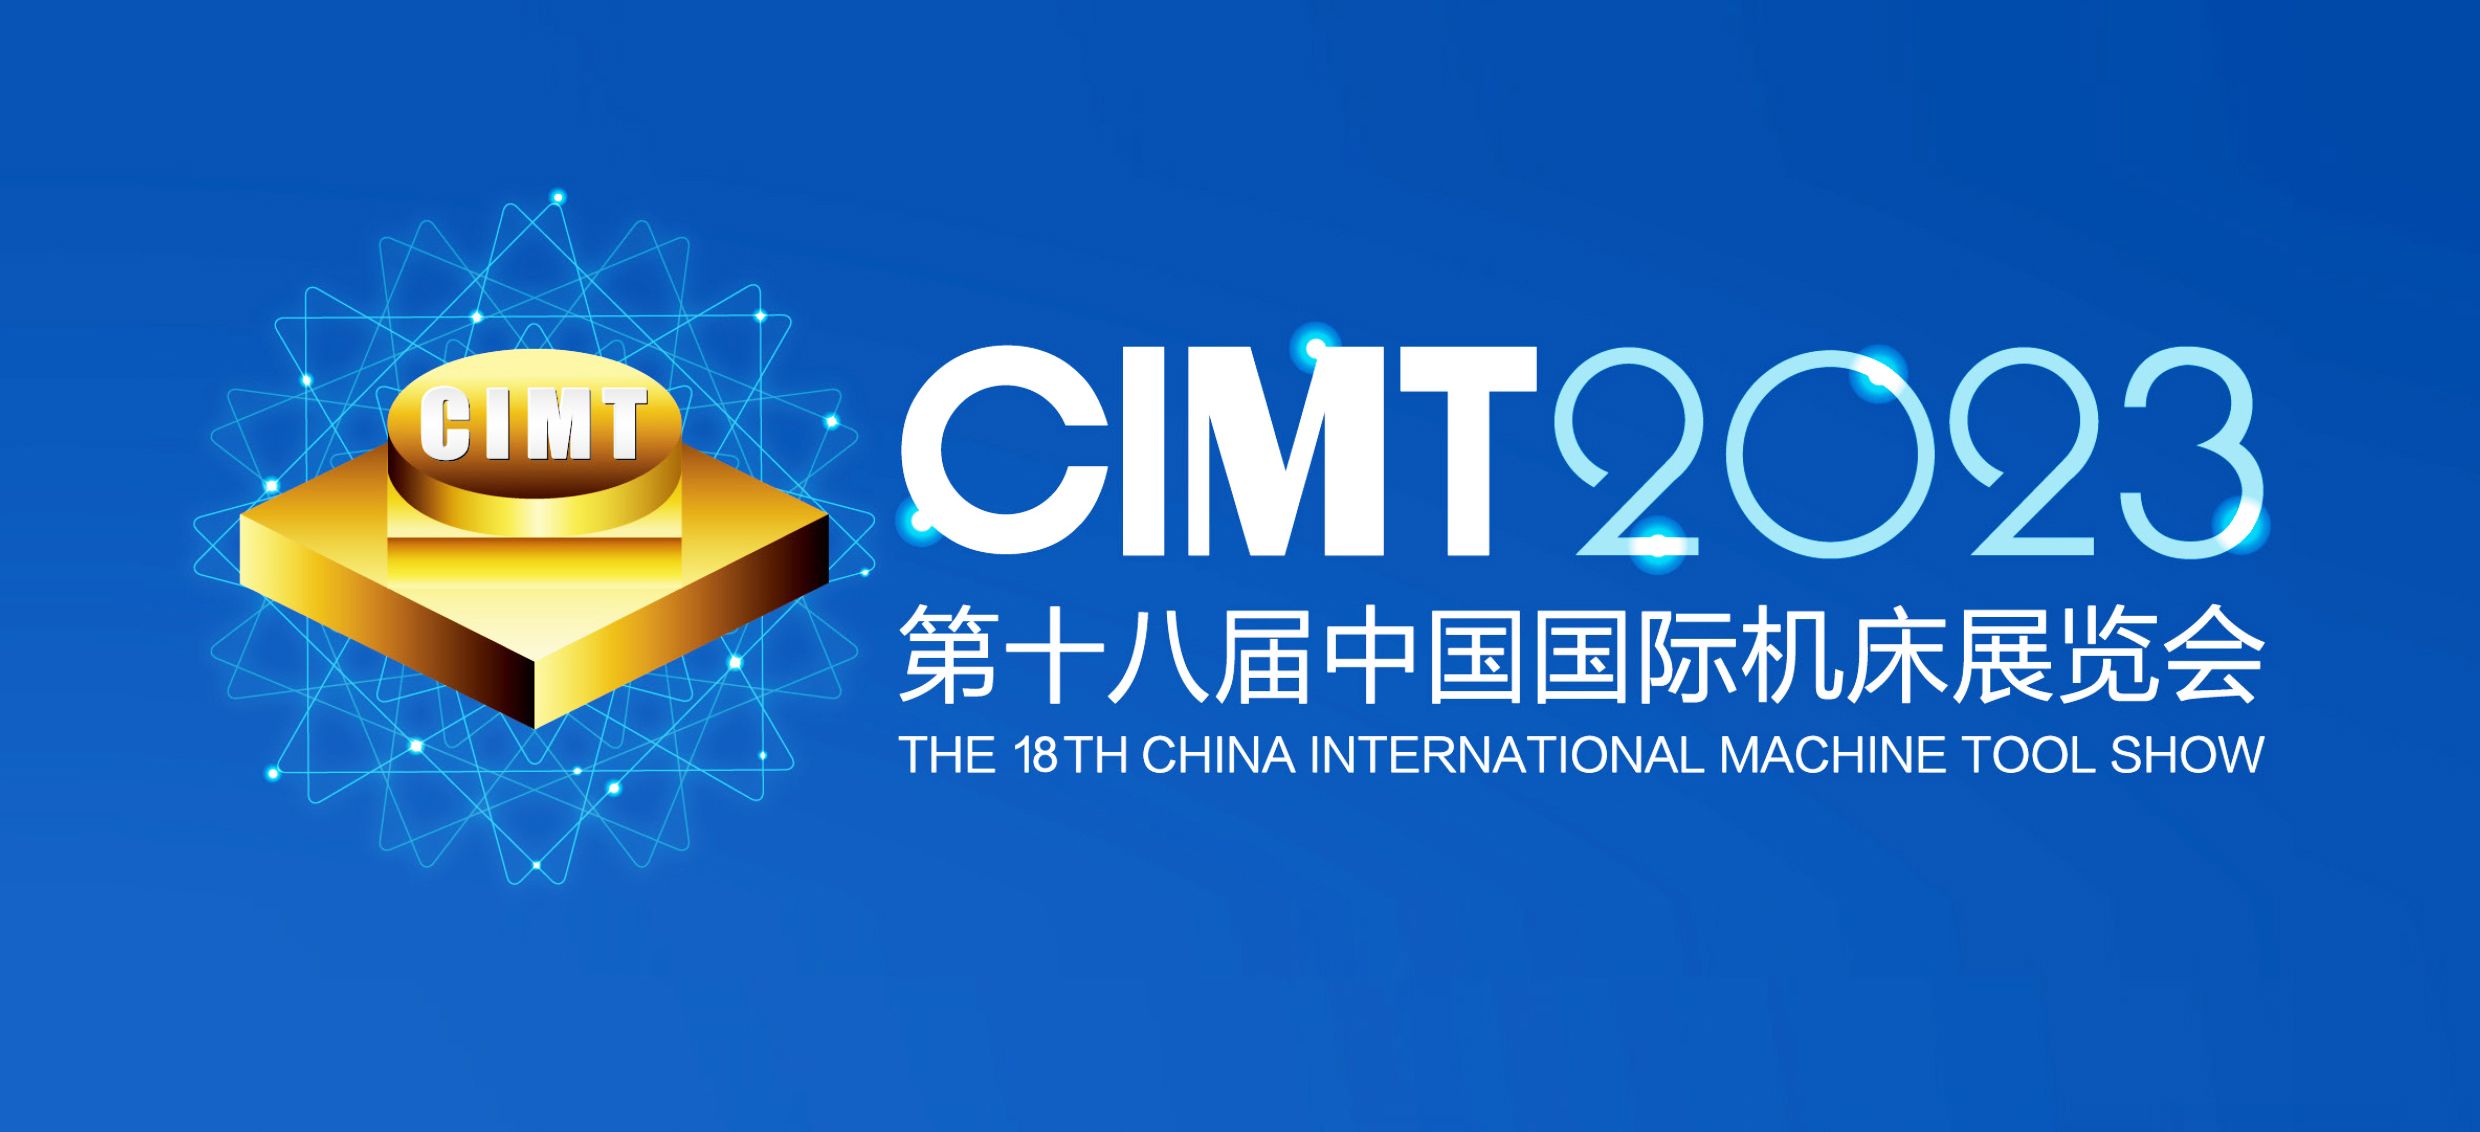 展會邀請|4月10-15第十八屆中國國際機床展覽會通錦精密與您相約北京！